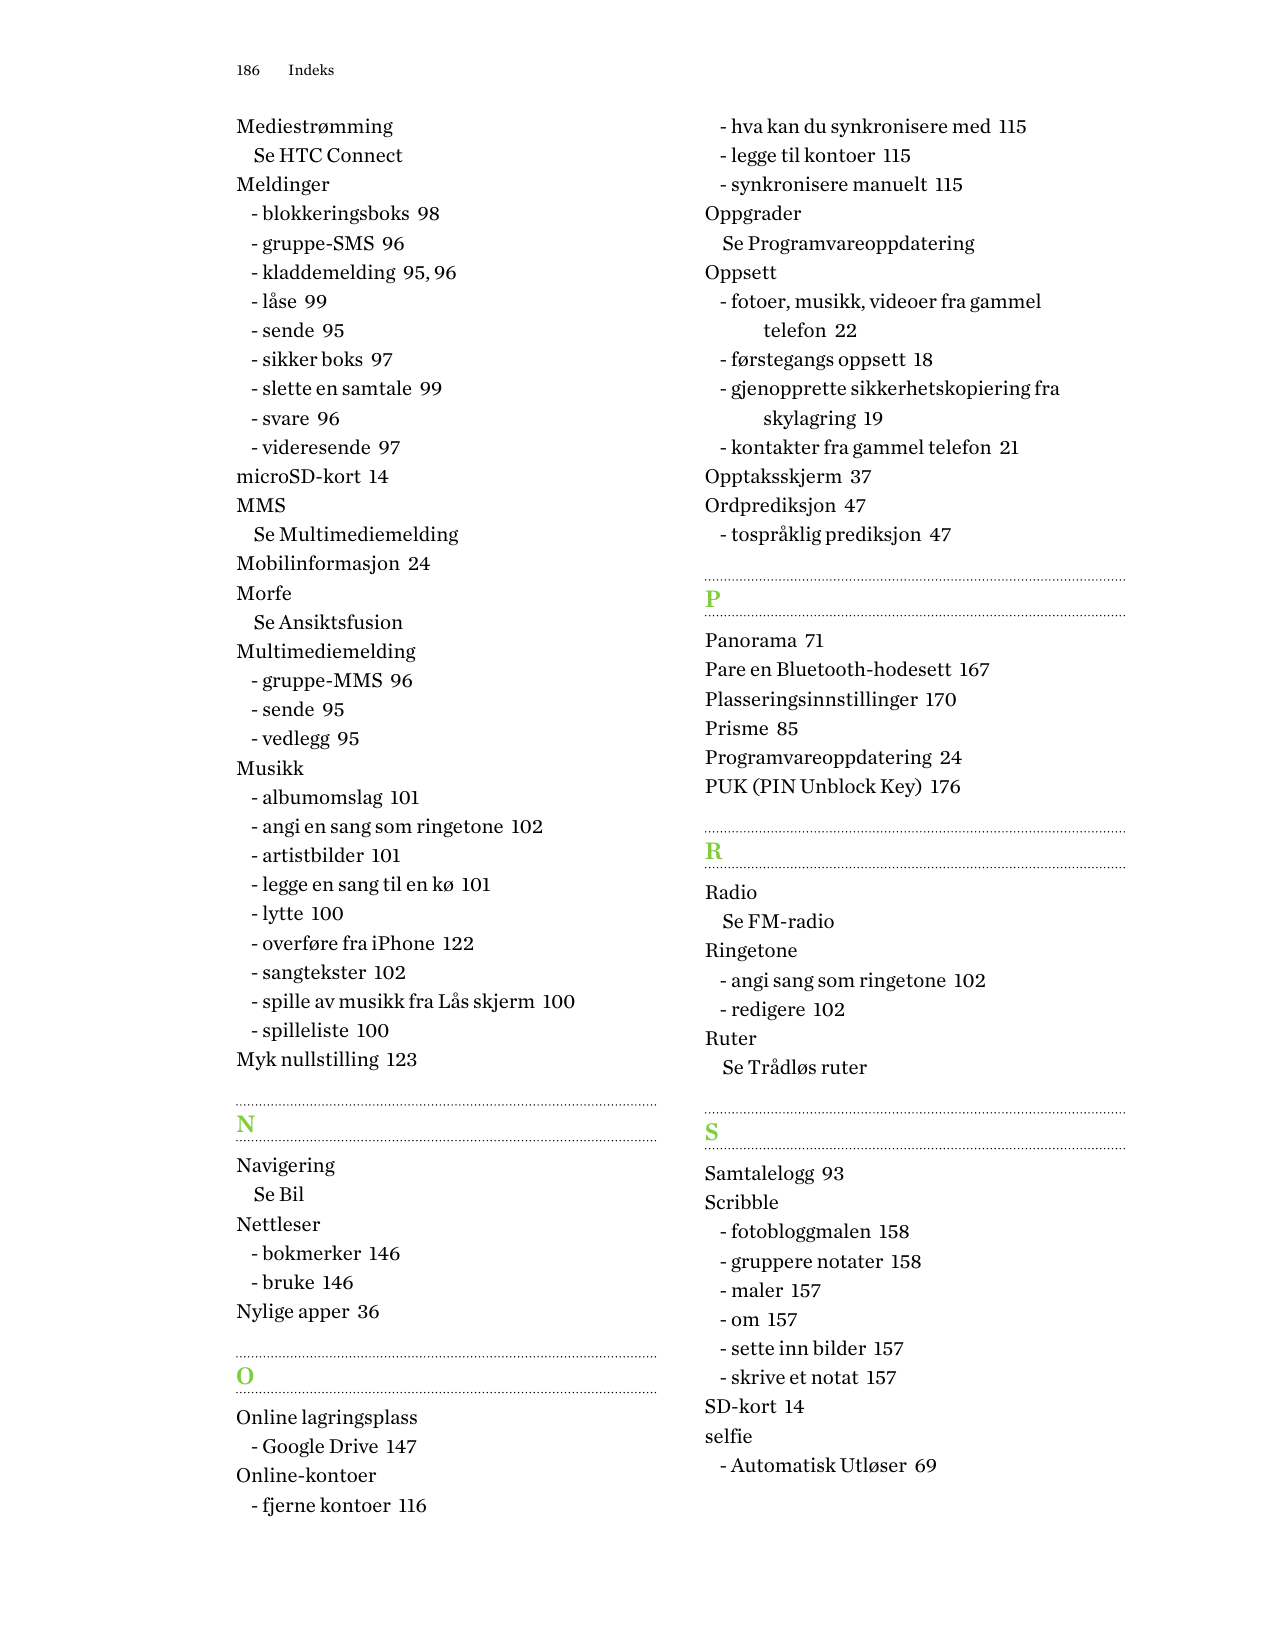 186IndeksMediestrømmingSe HTC ConnectMeldinger- blokkeringsboks 98- gruppe-SMS 96- kladdemelding 95, 96- låse 99- sende 95- sikk